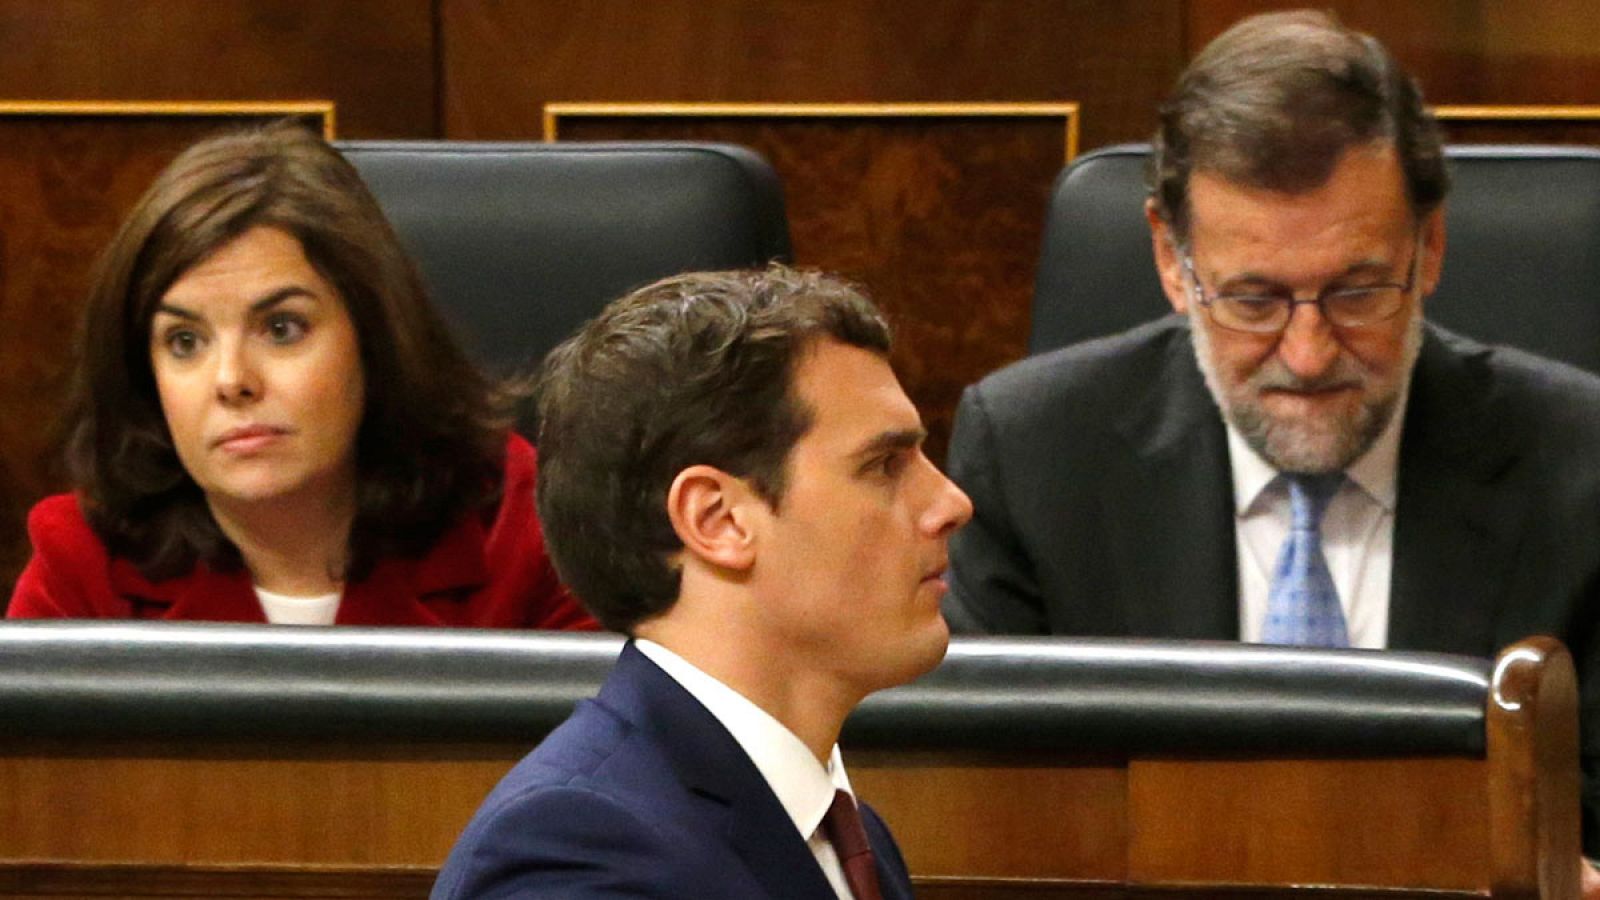 El líder Ciudadanos Albert Rivera pasa frente al jefe del Ejecutivo en funciones Mariano Rajoy y la vicepresidenta Soraya Sáenz de Santamaría